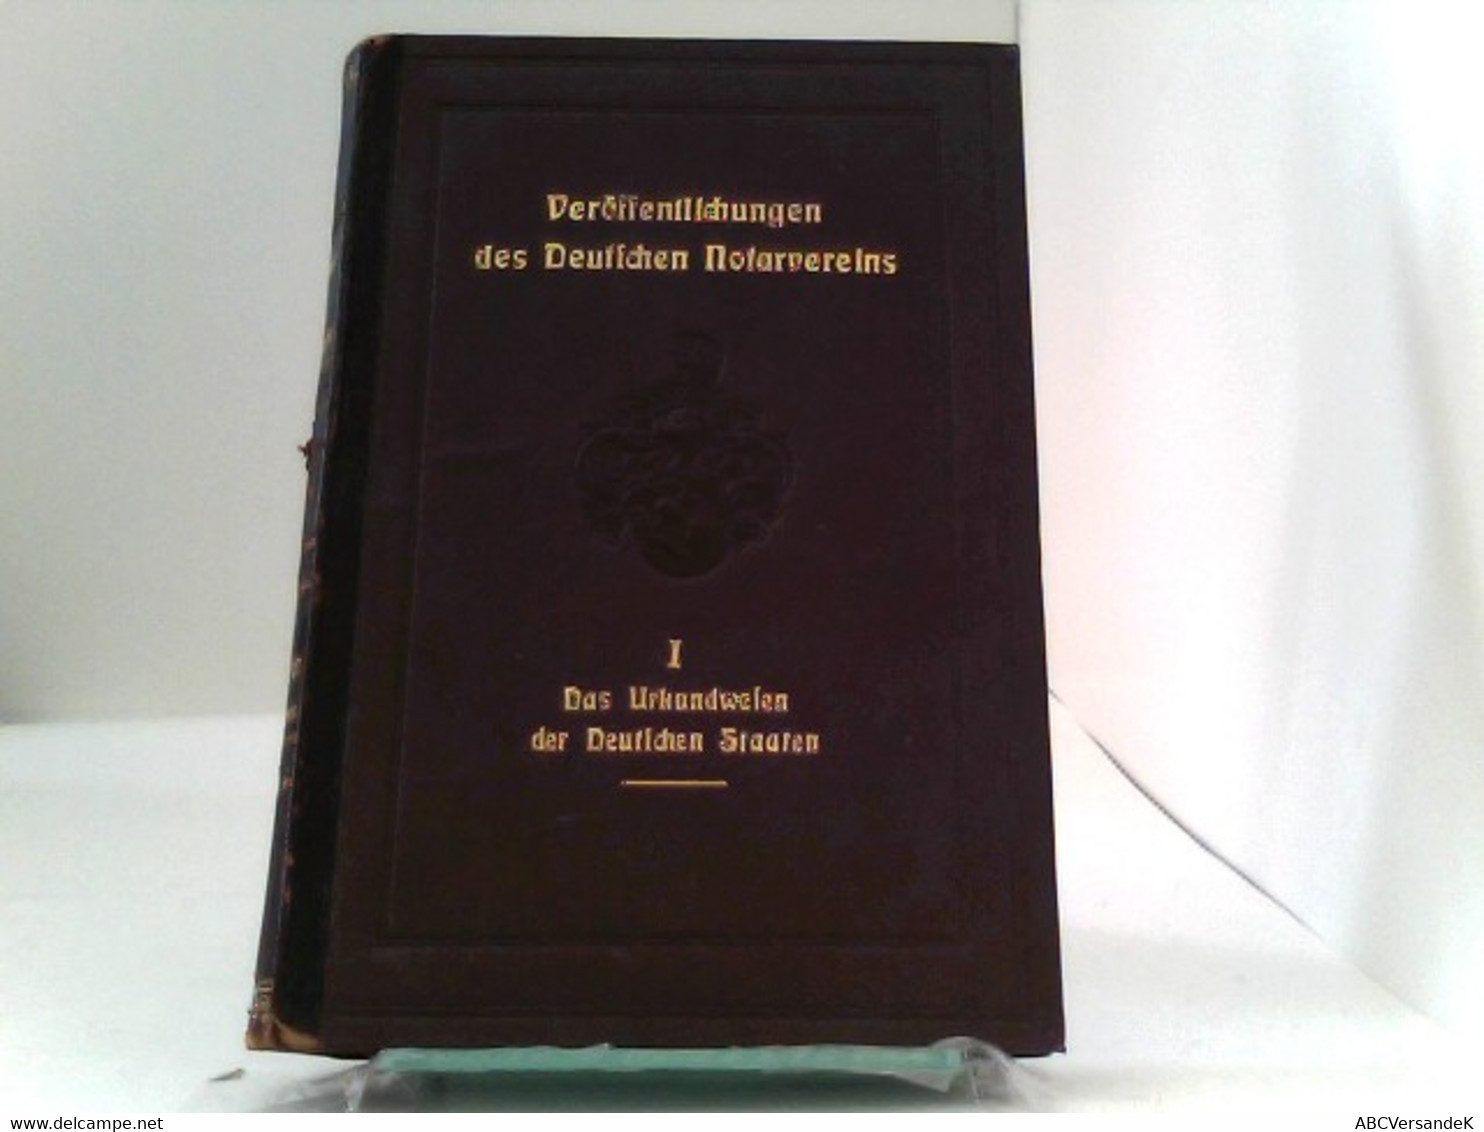 Das Urkundwesen Der Deutschen Staaten. Herausgegeben Vom Deutschen Notarvereine E.V. Zu Halle A.S. - Law